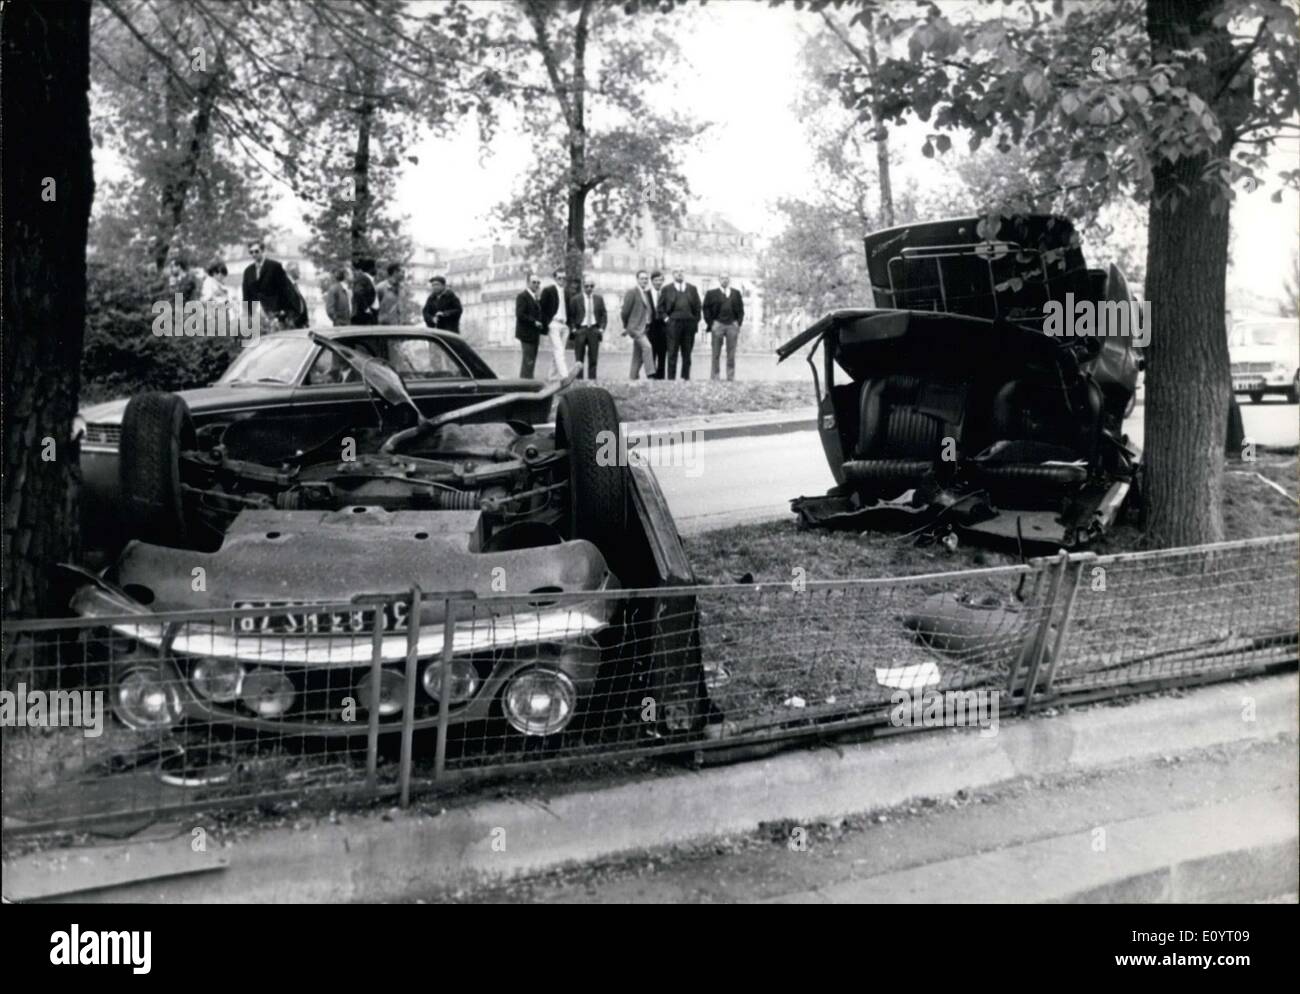 Mai 05, 1971 - Les couper en deux morceaux dans un accident Banque D'Images